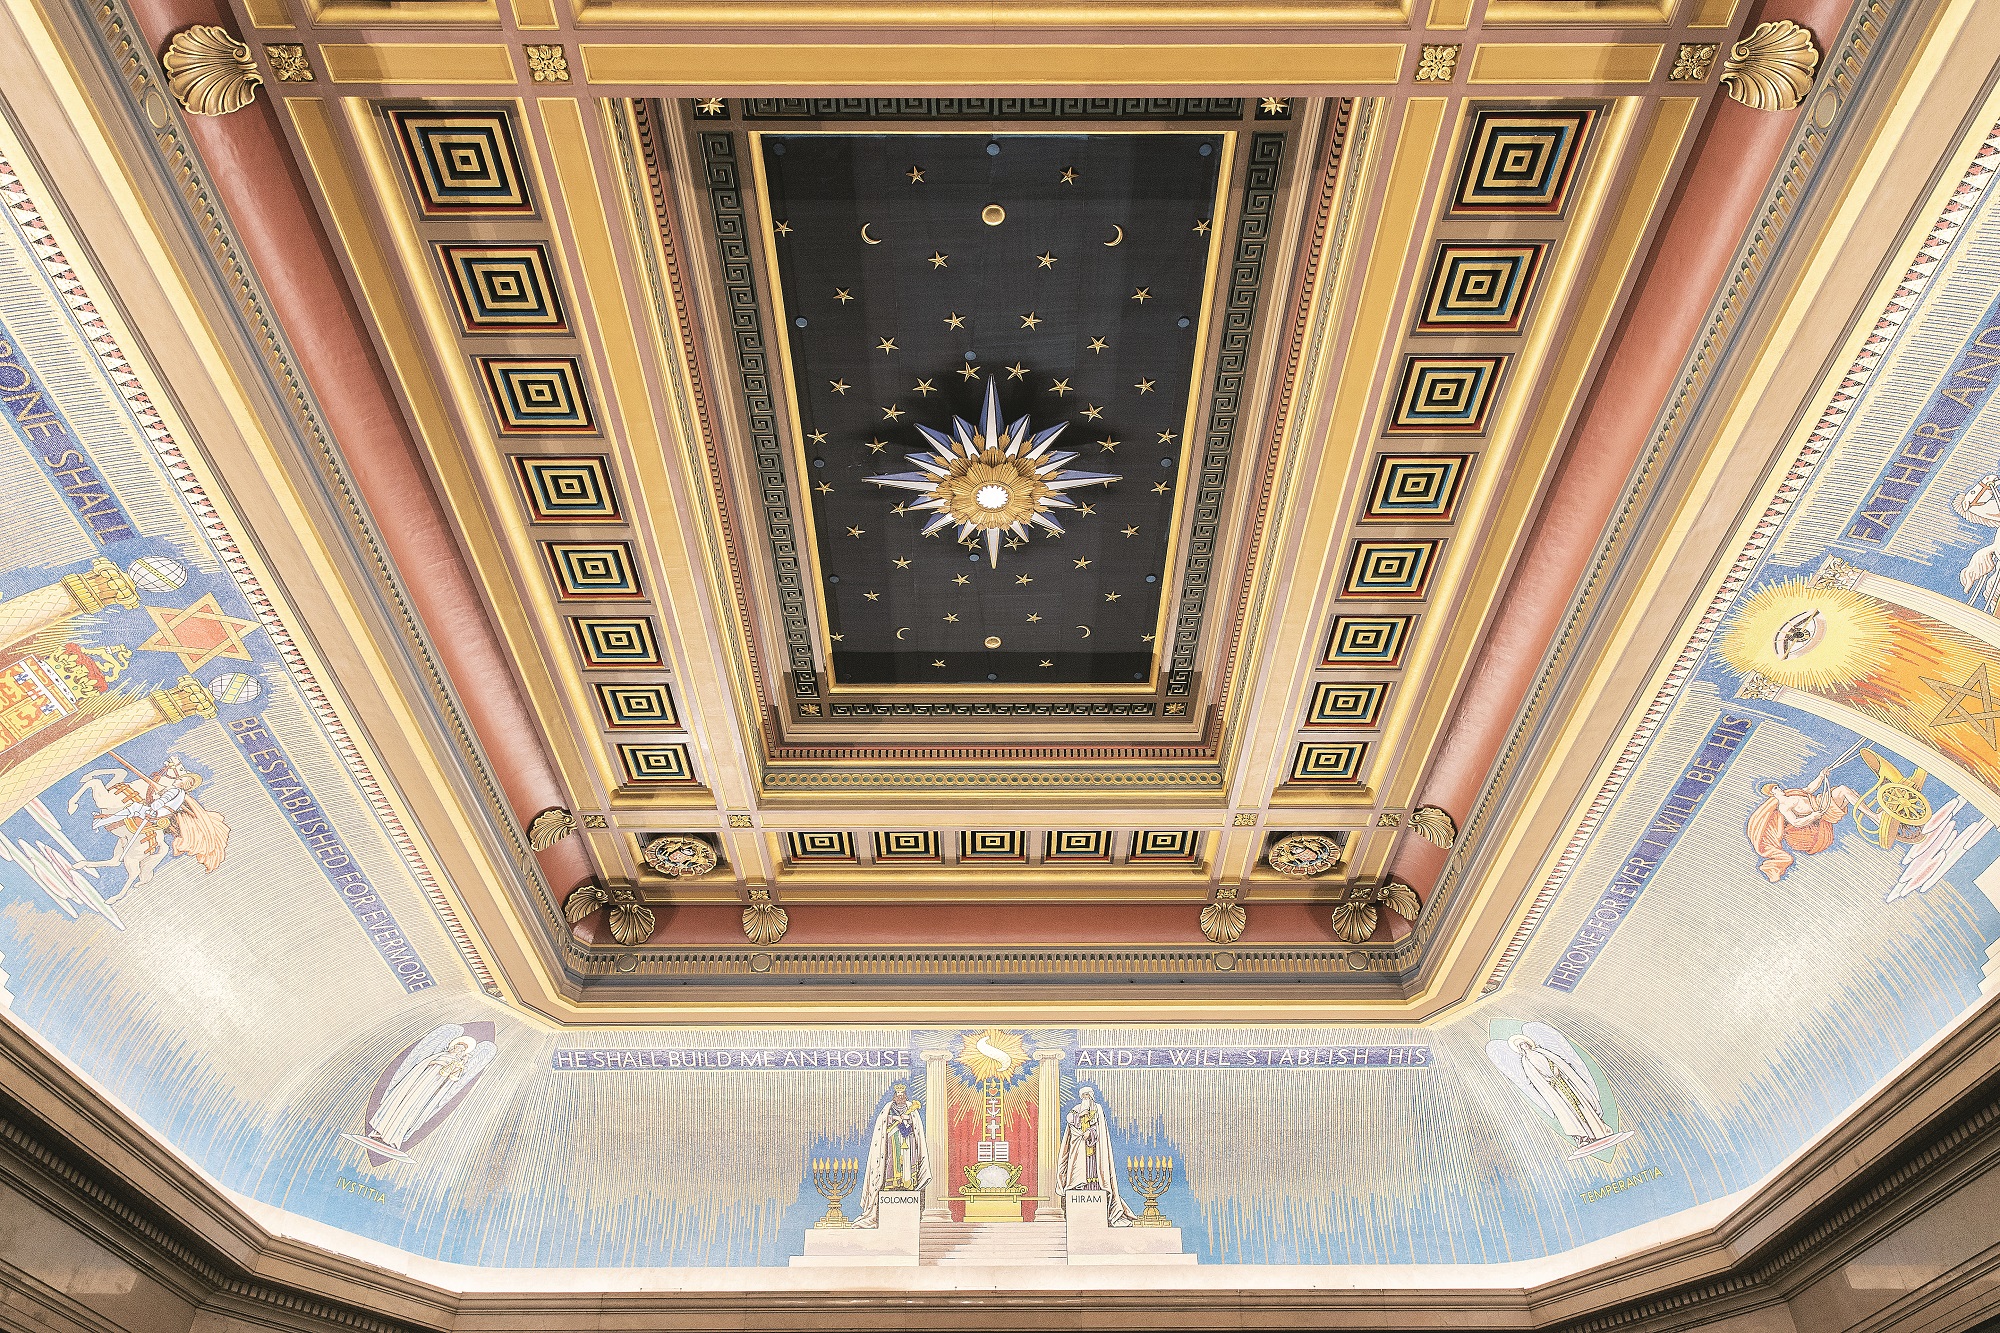 Freemasons' Hall